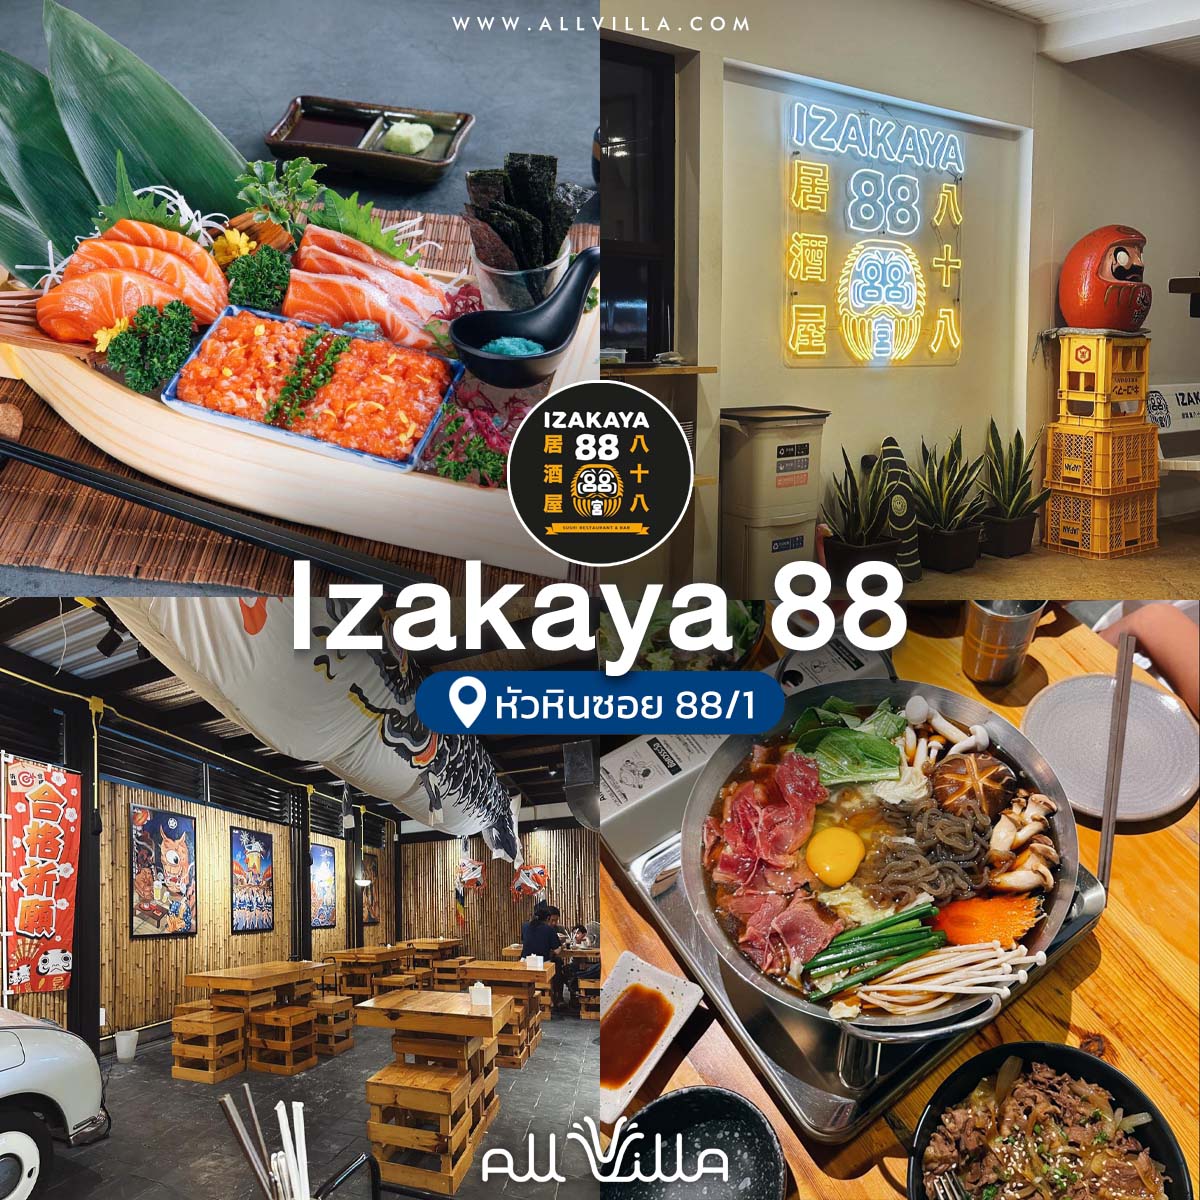 Izakaya 88